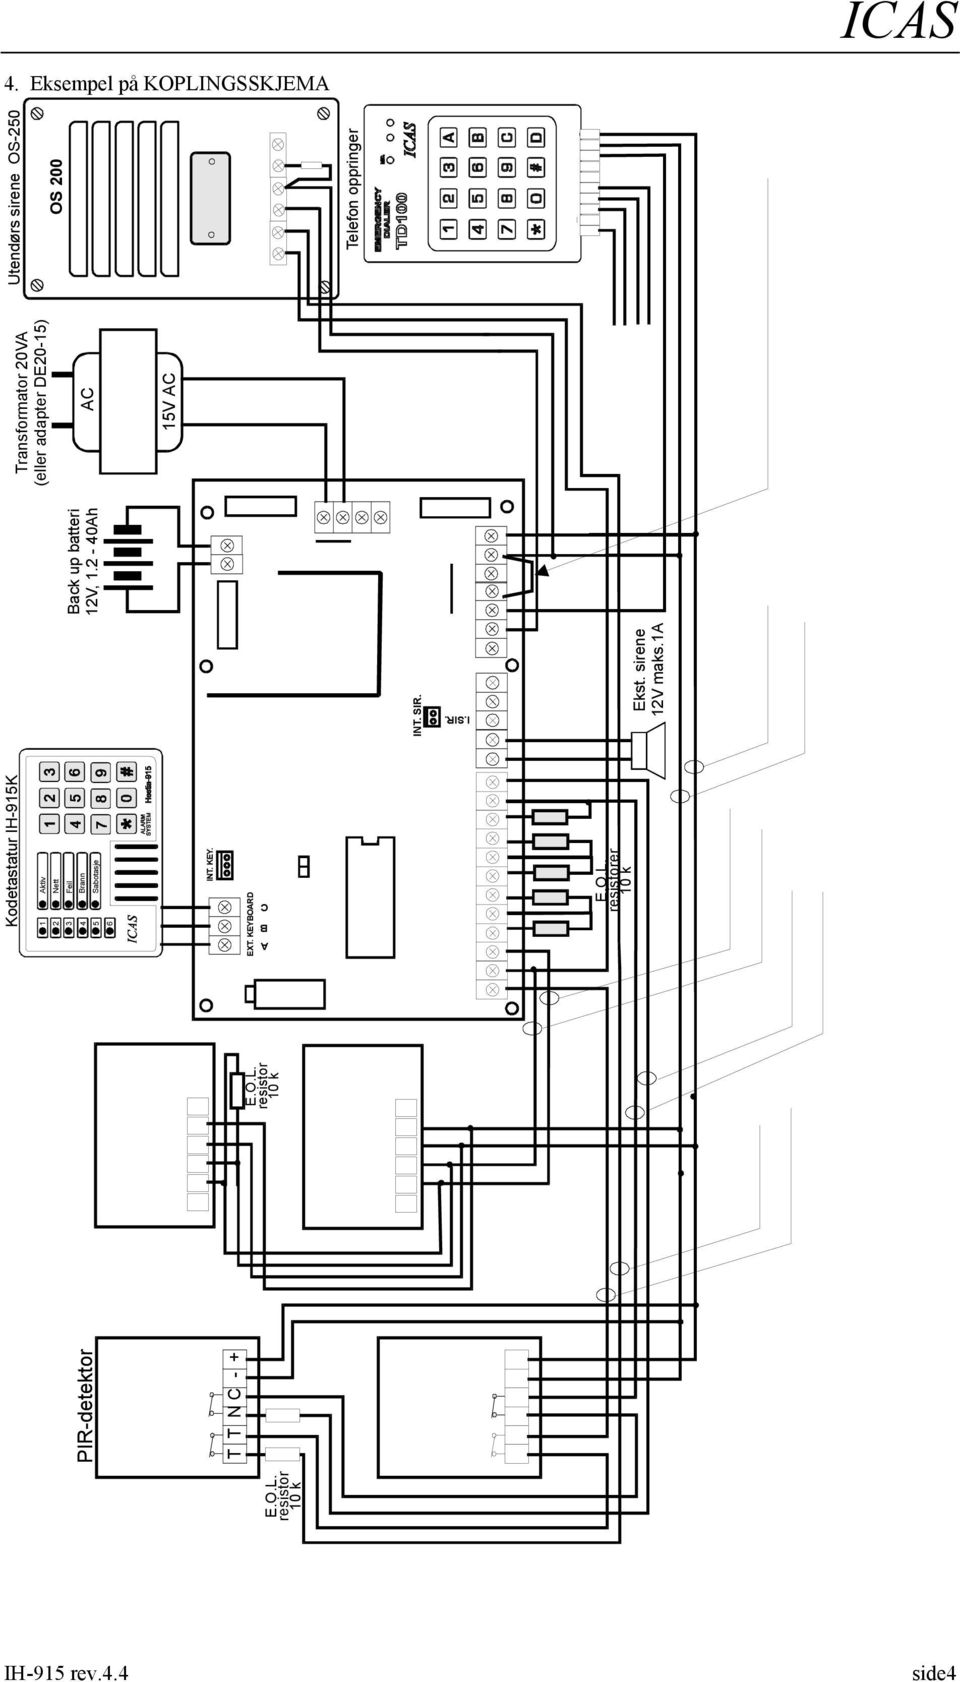 O.L. resistorer 10 k Ekst. sirene 12V maks.1a Back up batteri 12V, 1.